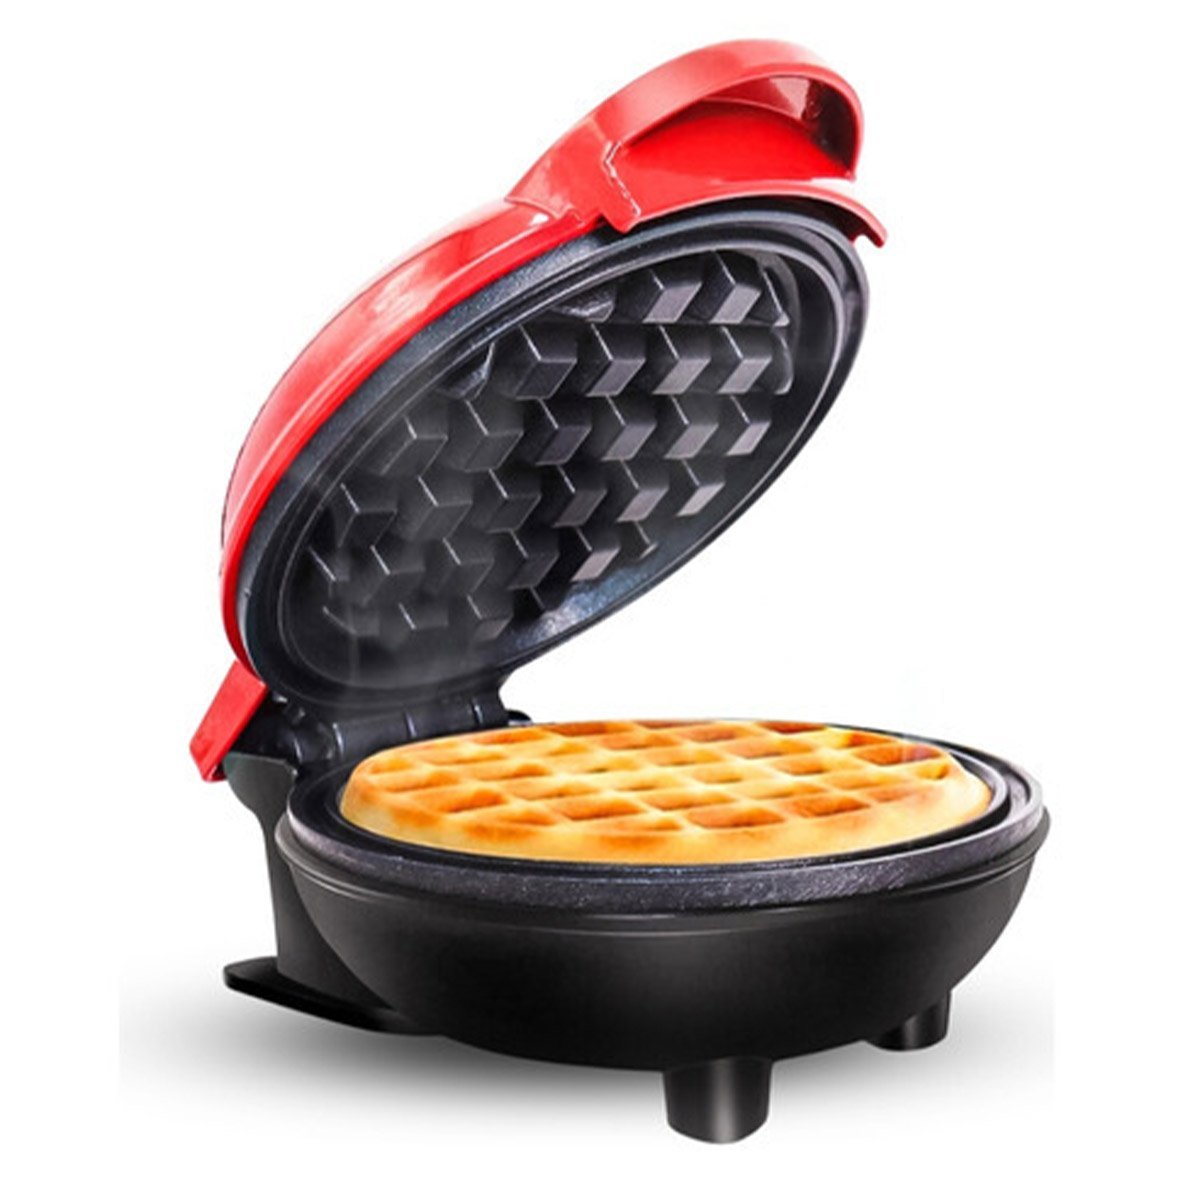 Mini Maquina de Waffles Panqueca Cozinha Refeiçao Antiaderente Cafe da Manha Lanche Ab.MIDIA LG-SK06 - 3